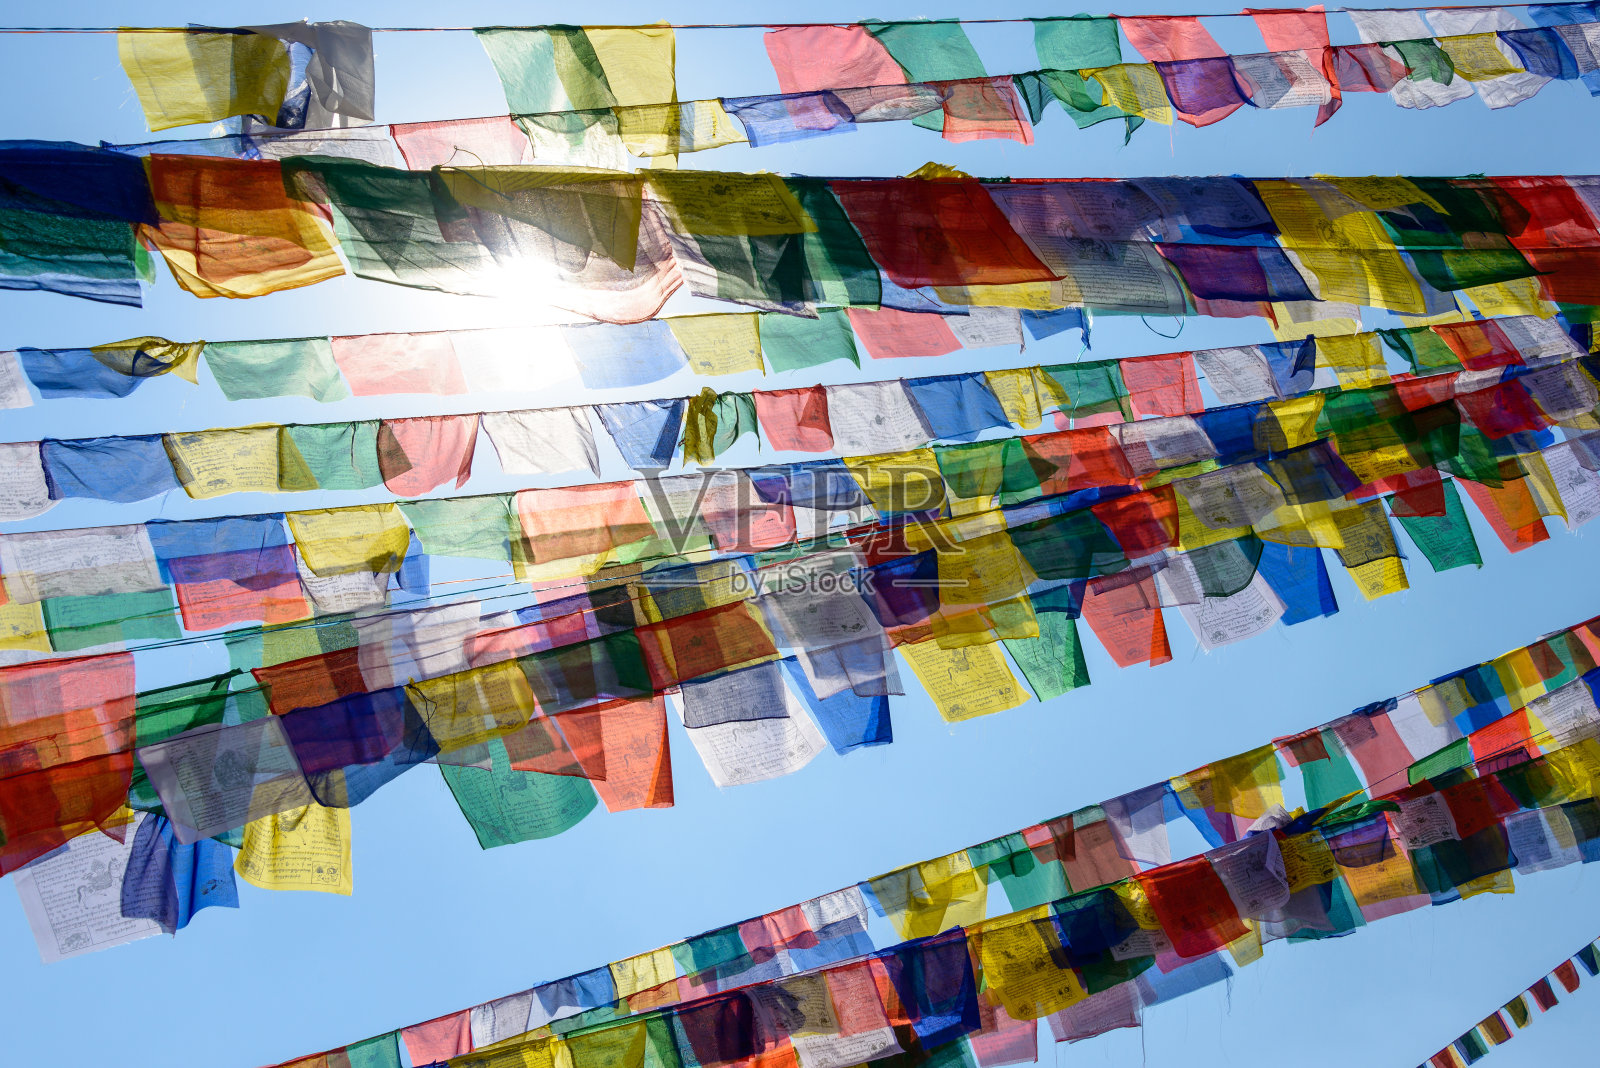 尼泊尔的经幡照片摄影图片